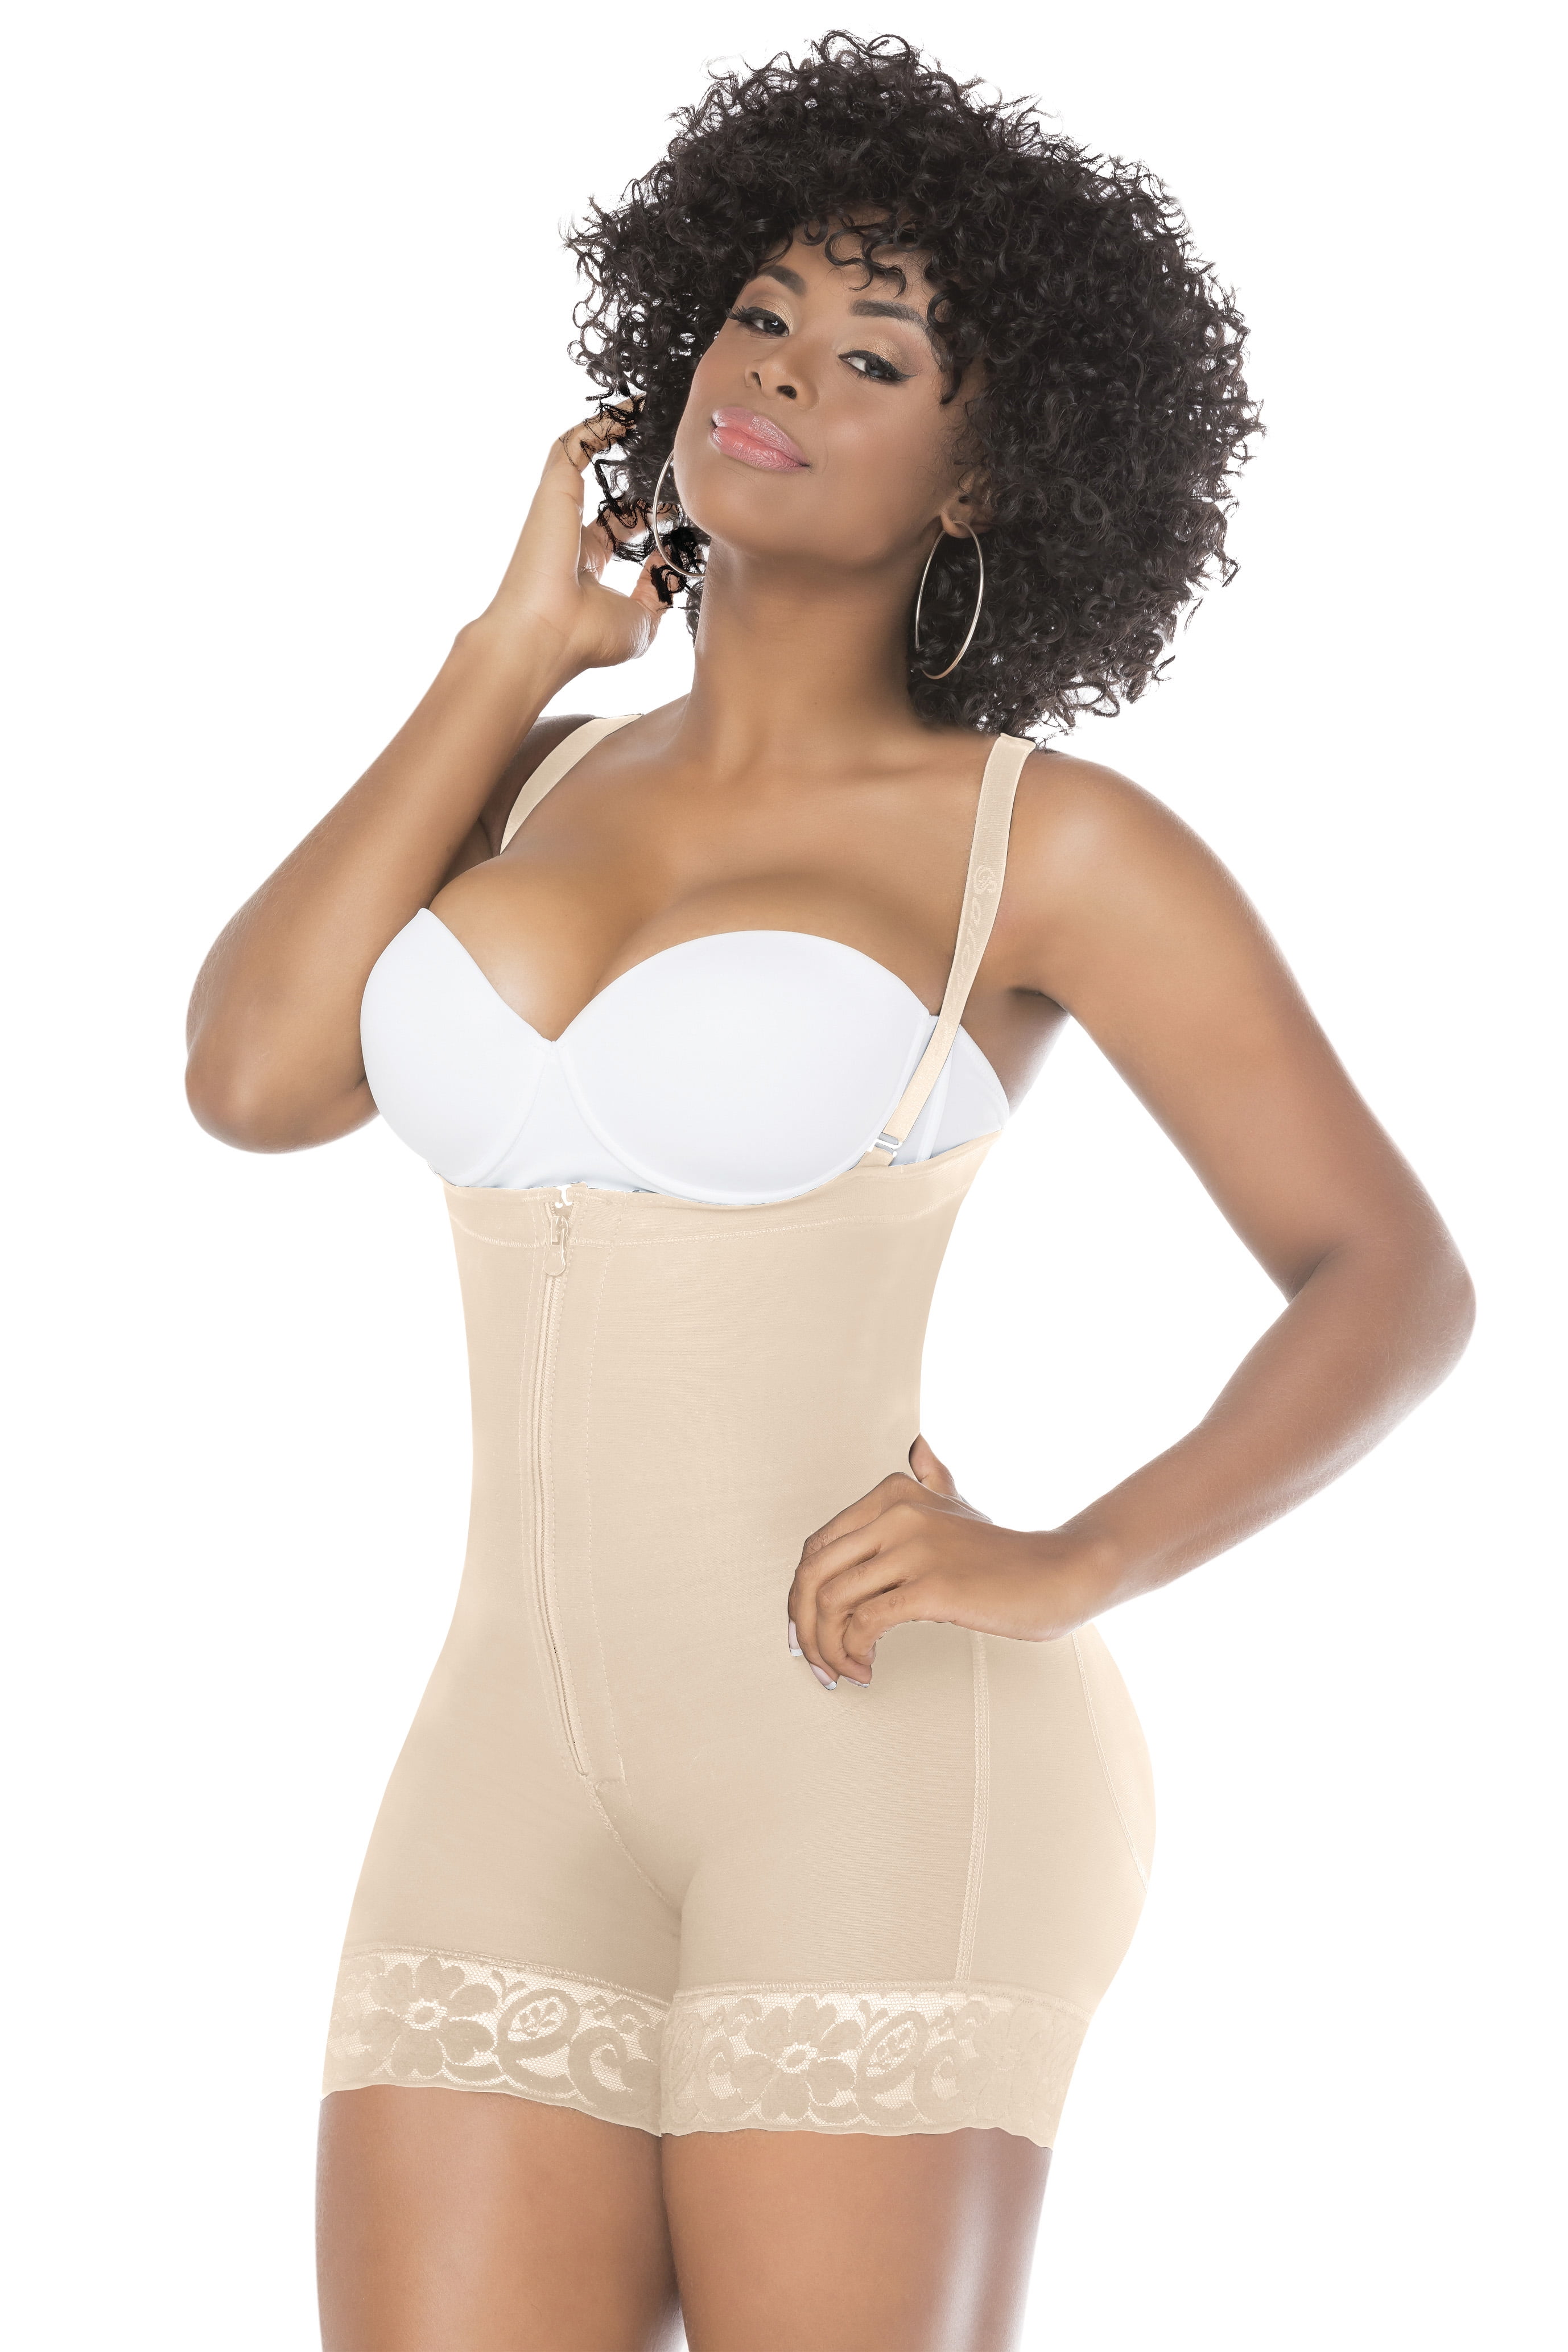 Leapair Plus Size Fajas Colombianas Full Body Shapewear Waist slimming Body  girdles for Women 